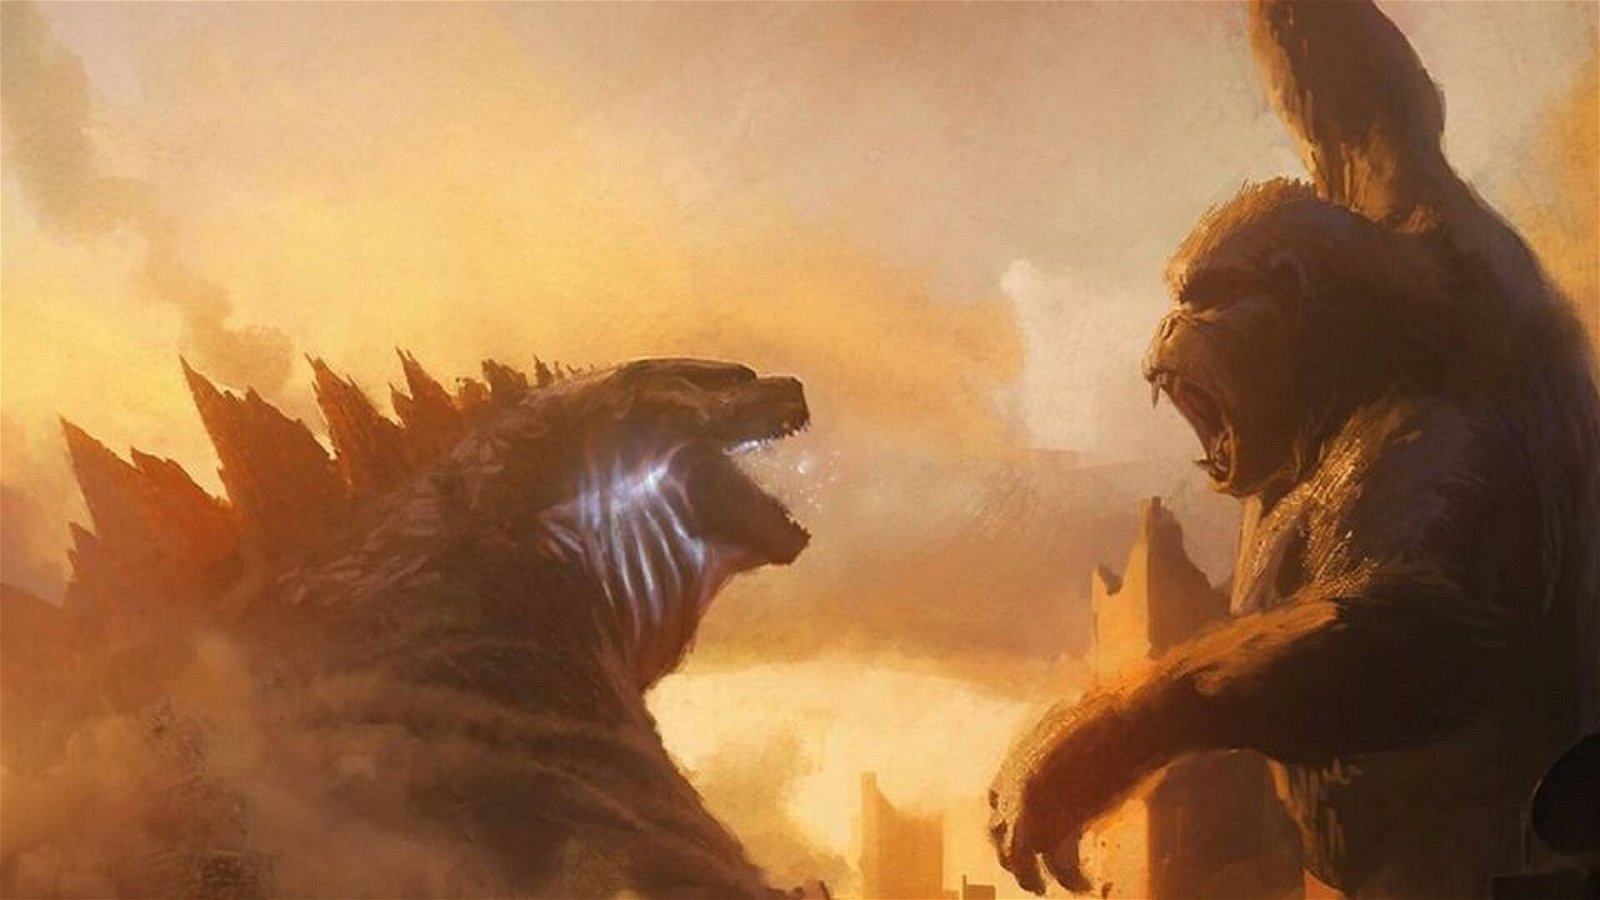 Immagine di Godzilla vs. Kong - il primo spettacolare trailer italiano